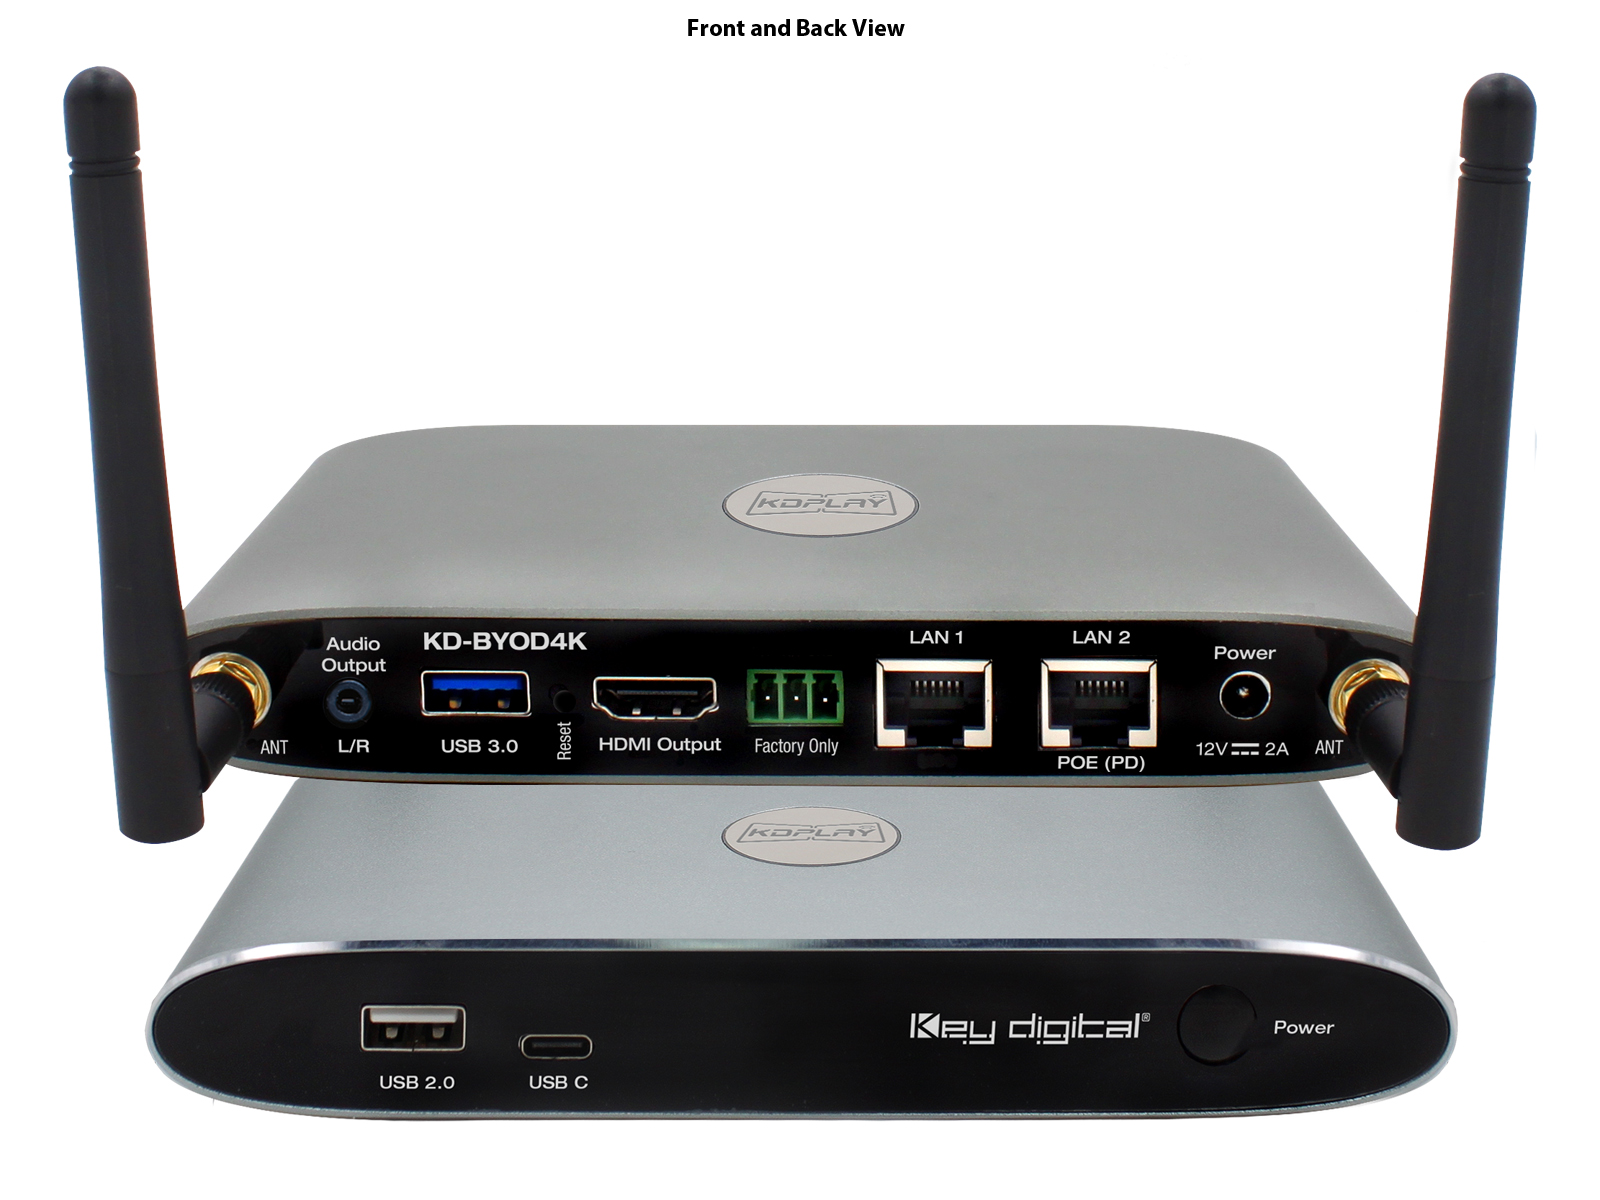 KD-BYOD4K 4K HDMI/USB 3.0 Wireless BYOD Presentation Gateway with POE by Key Digital